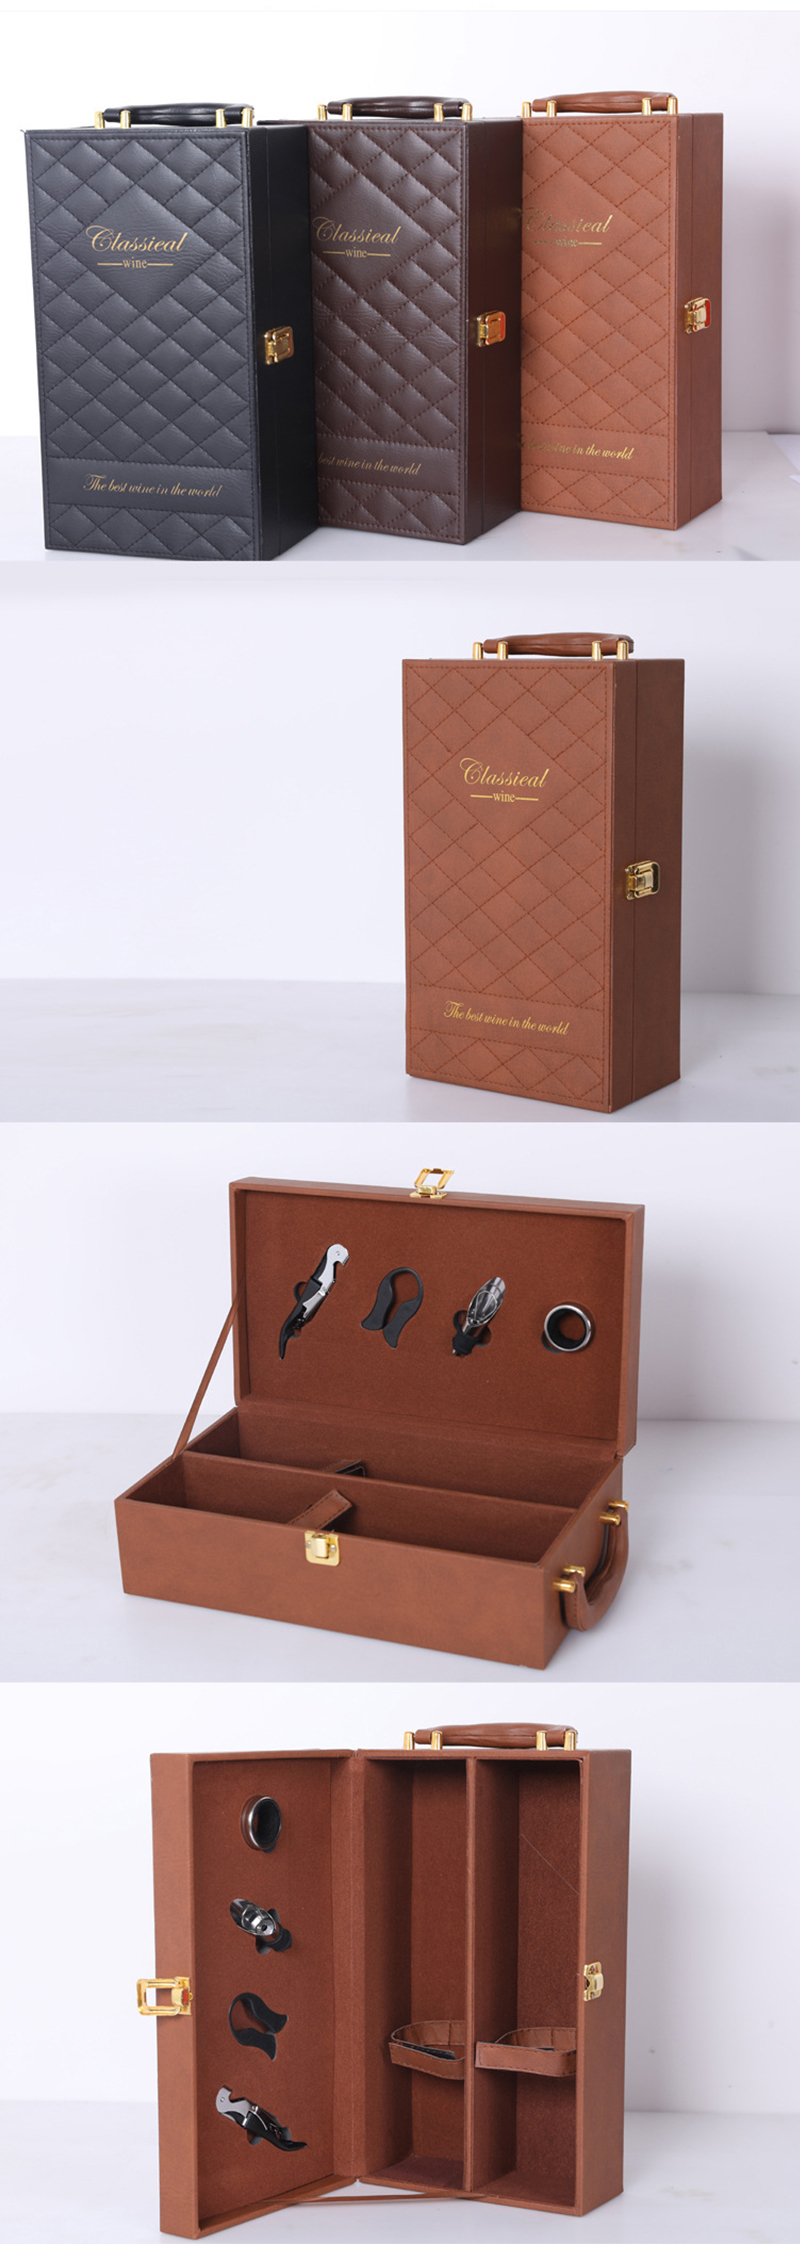 高档皮盒红酒包装盒设计